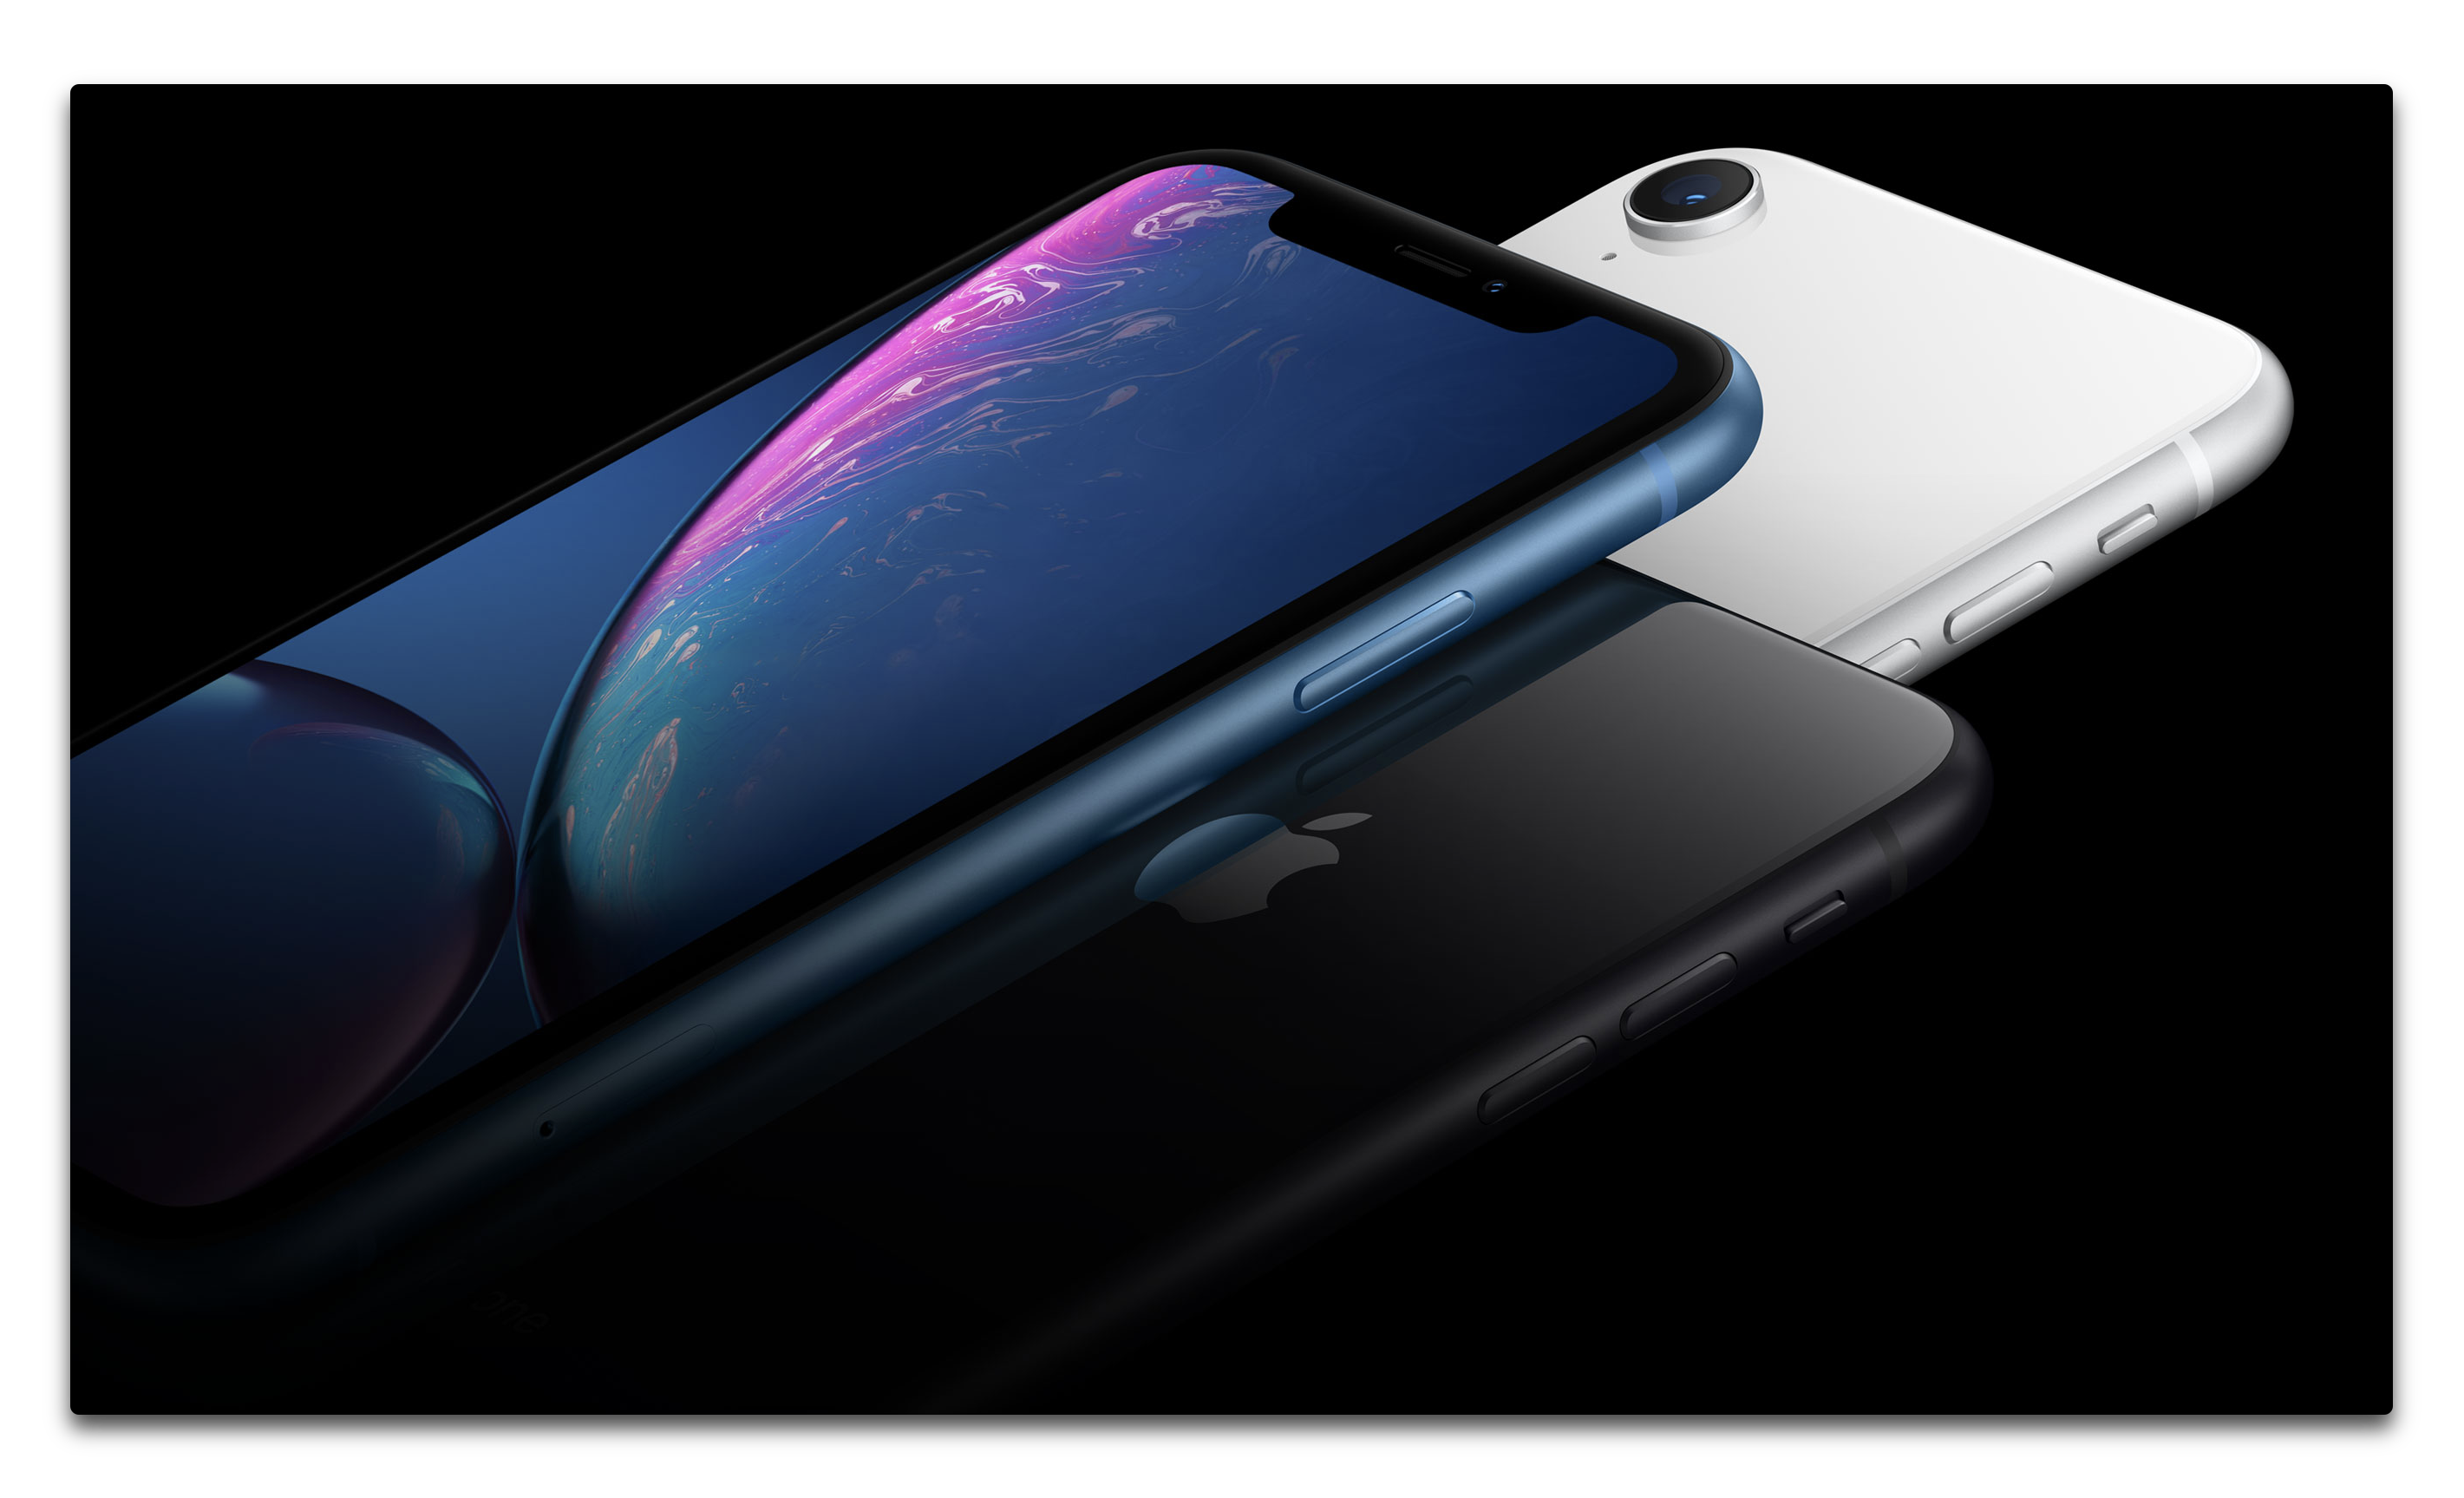 英国の消費者擁護団体によると、Appleは特定のiPhoneモデルのバッテリ寿命を「大幅に誇張している」